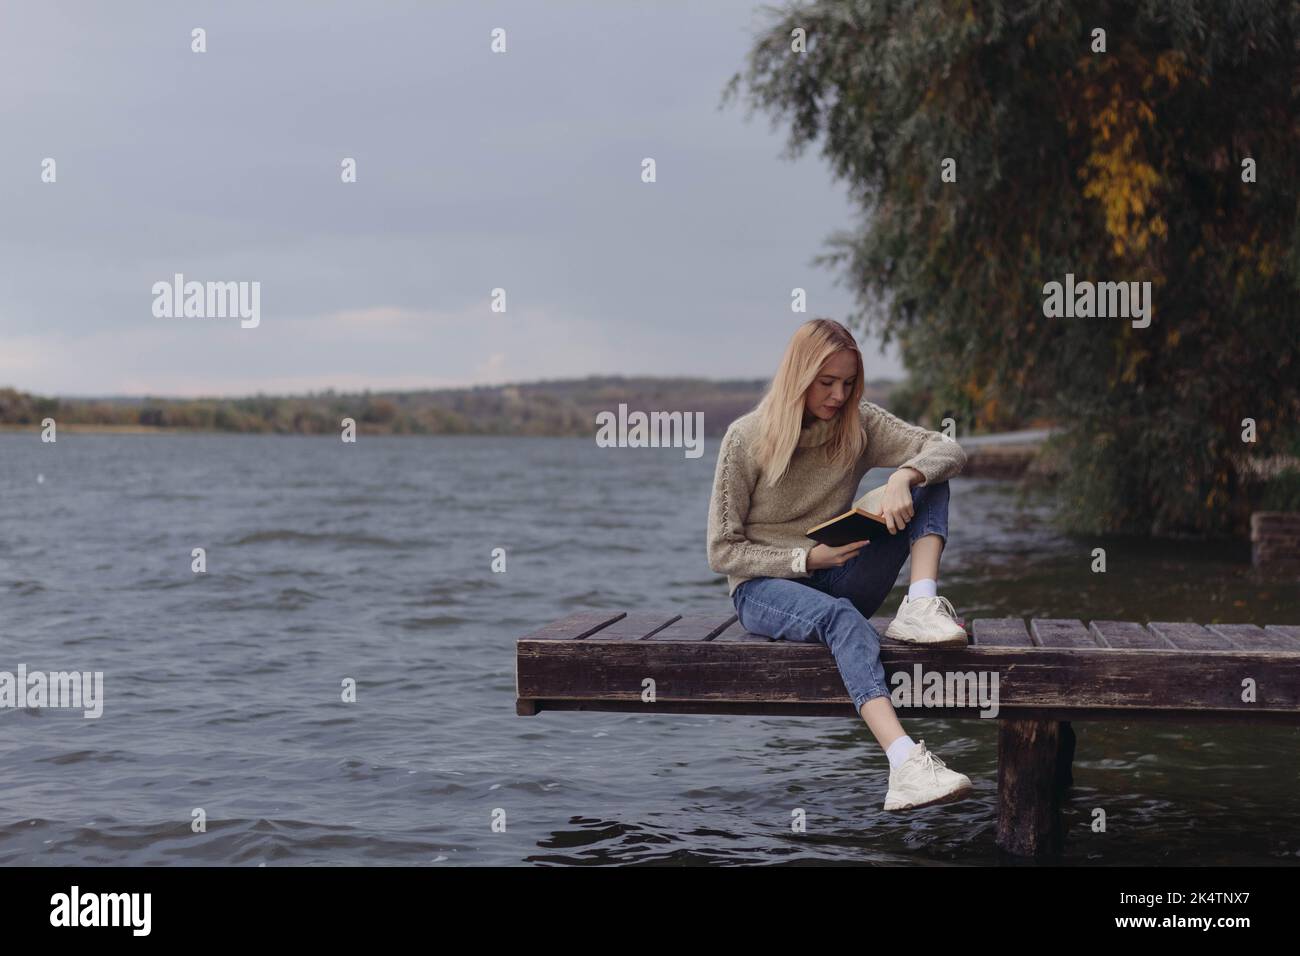 In autunno, una ragazza sulla riva del fiume legge un libro Foto Stock